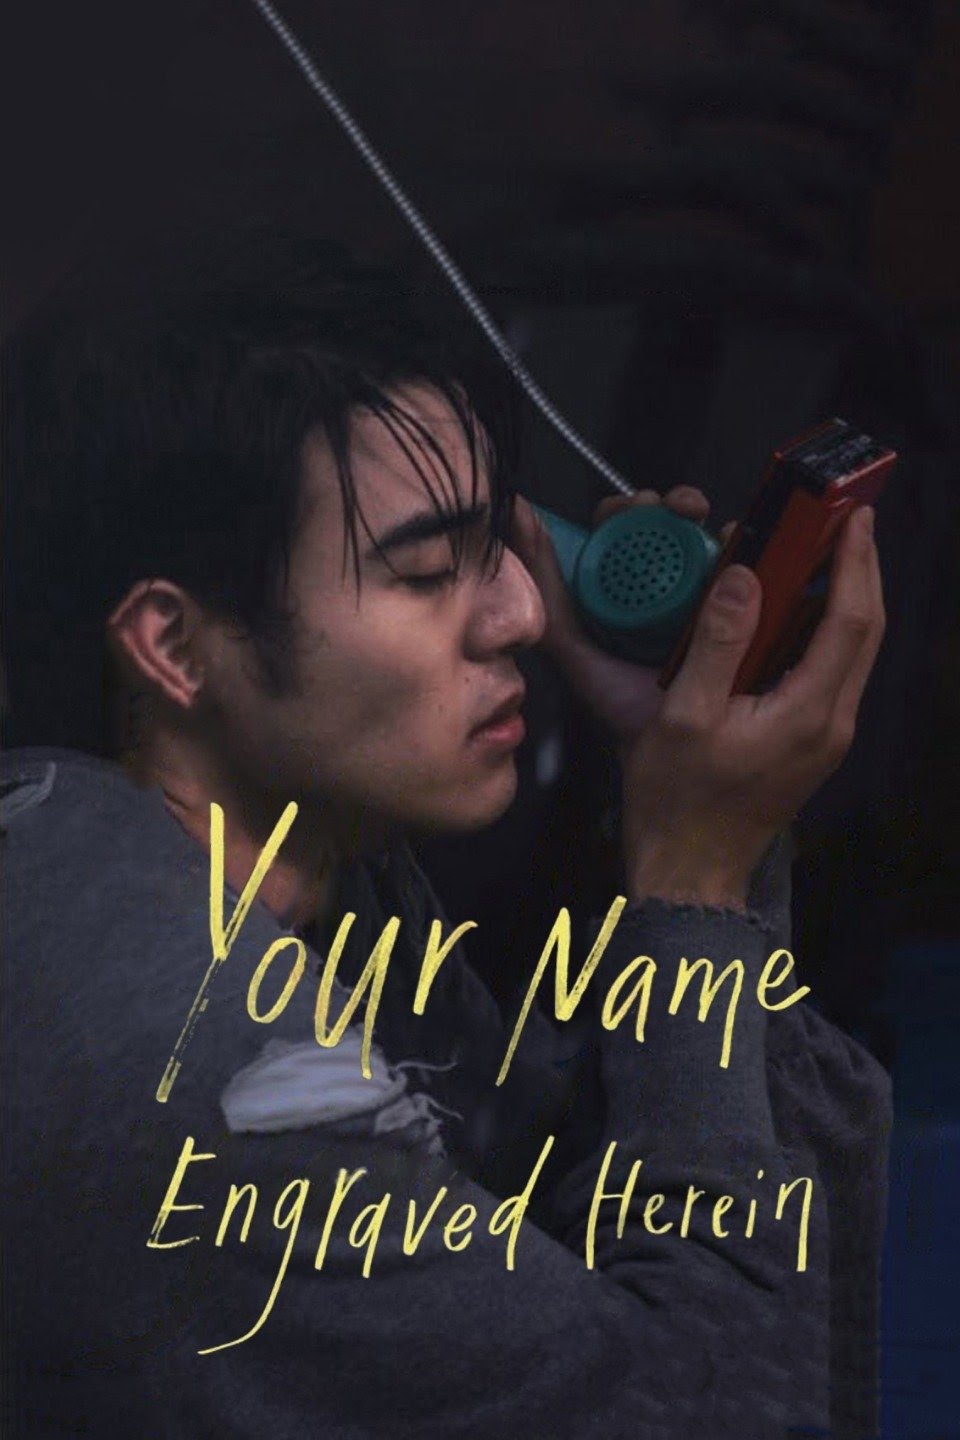 [จีน] Your Name Engraved Herein (2020) ชื่อที่สลักไว้ใต้หัวใจ [1080p] [NETFLIX] [พากย์จีน 5.1] [Soundtrack บรรยายไทย + อังกฤษ] [เสียงจีน + ซับไทย] [DOSYAUPLOAD]